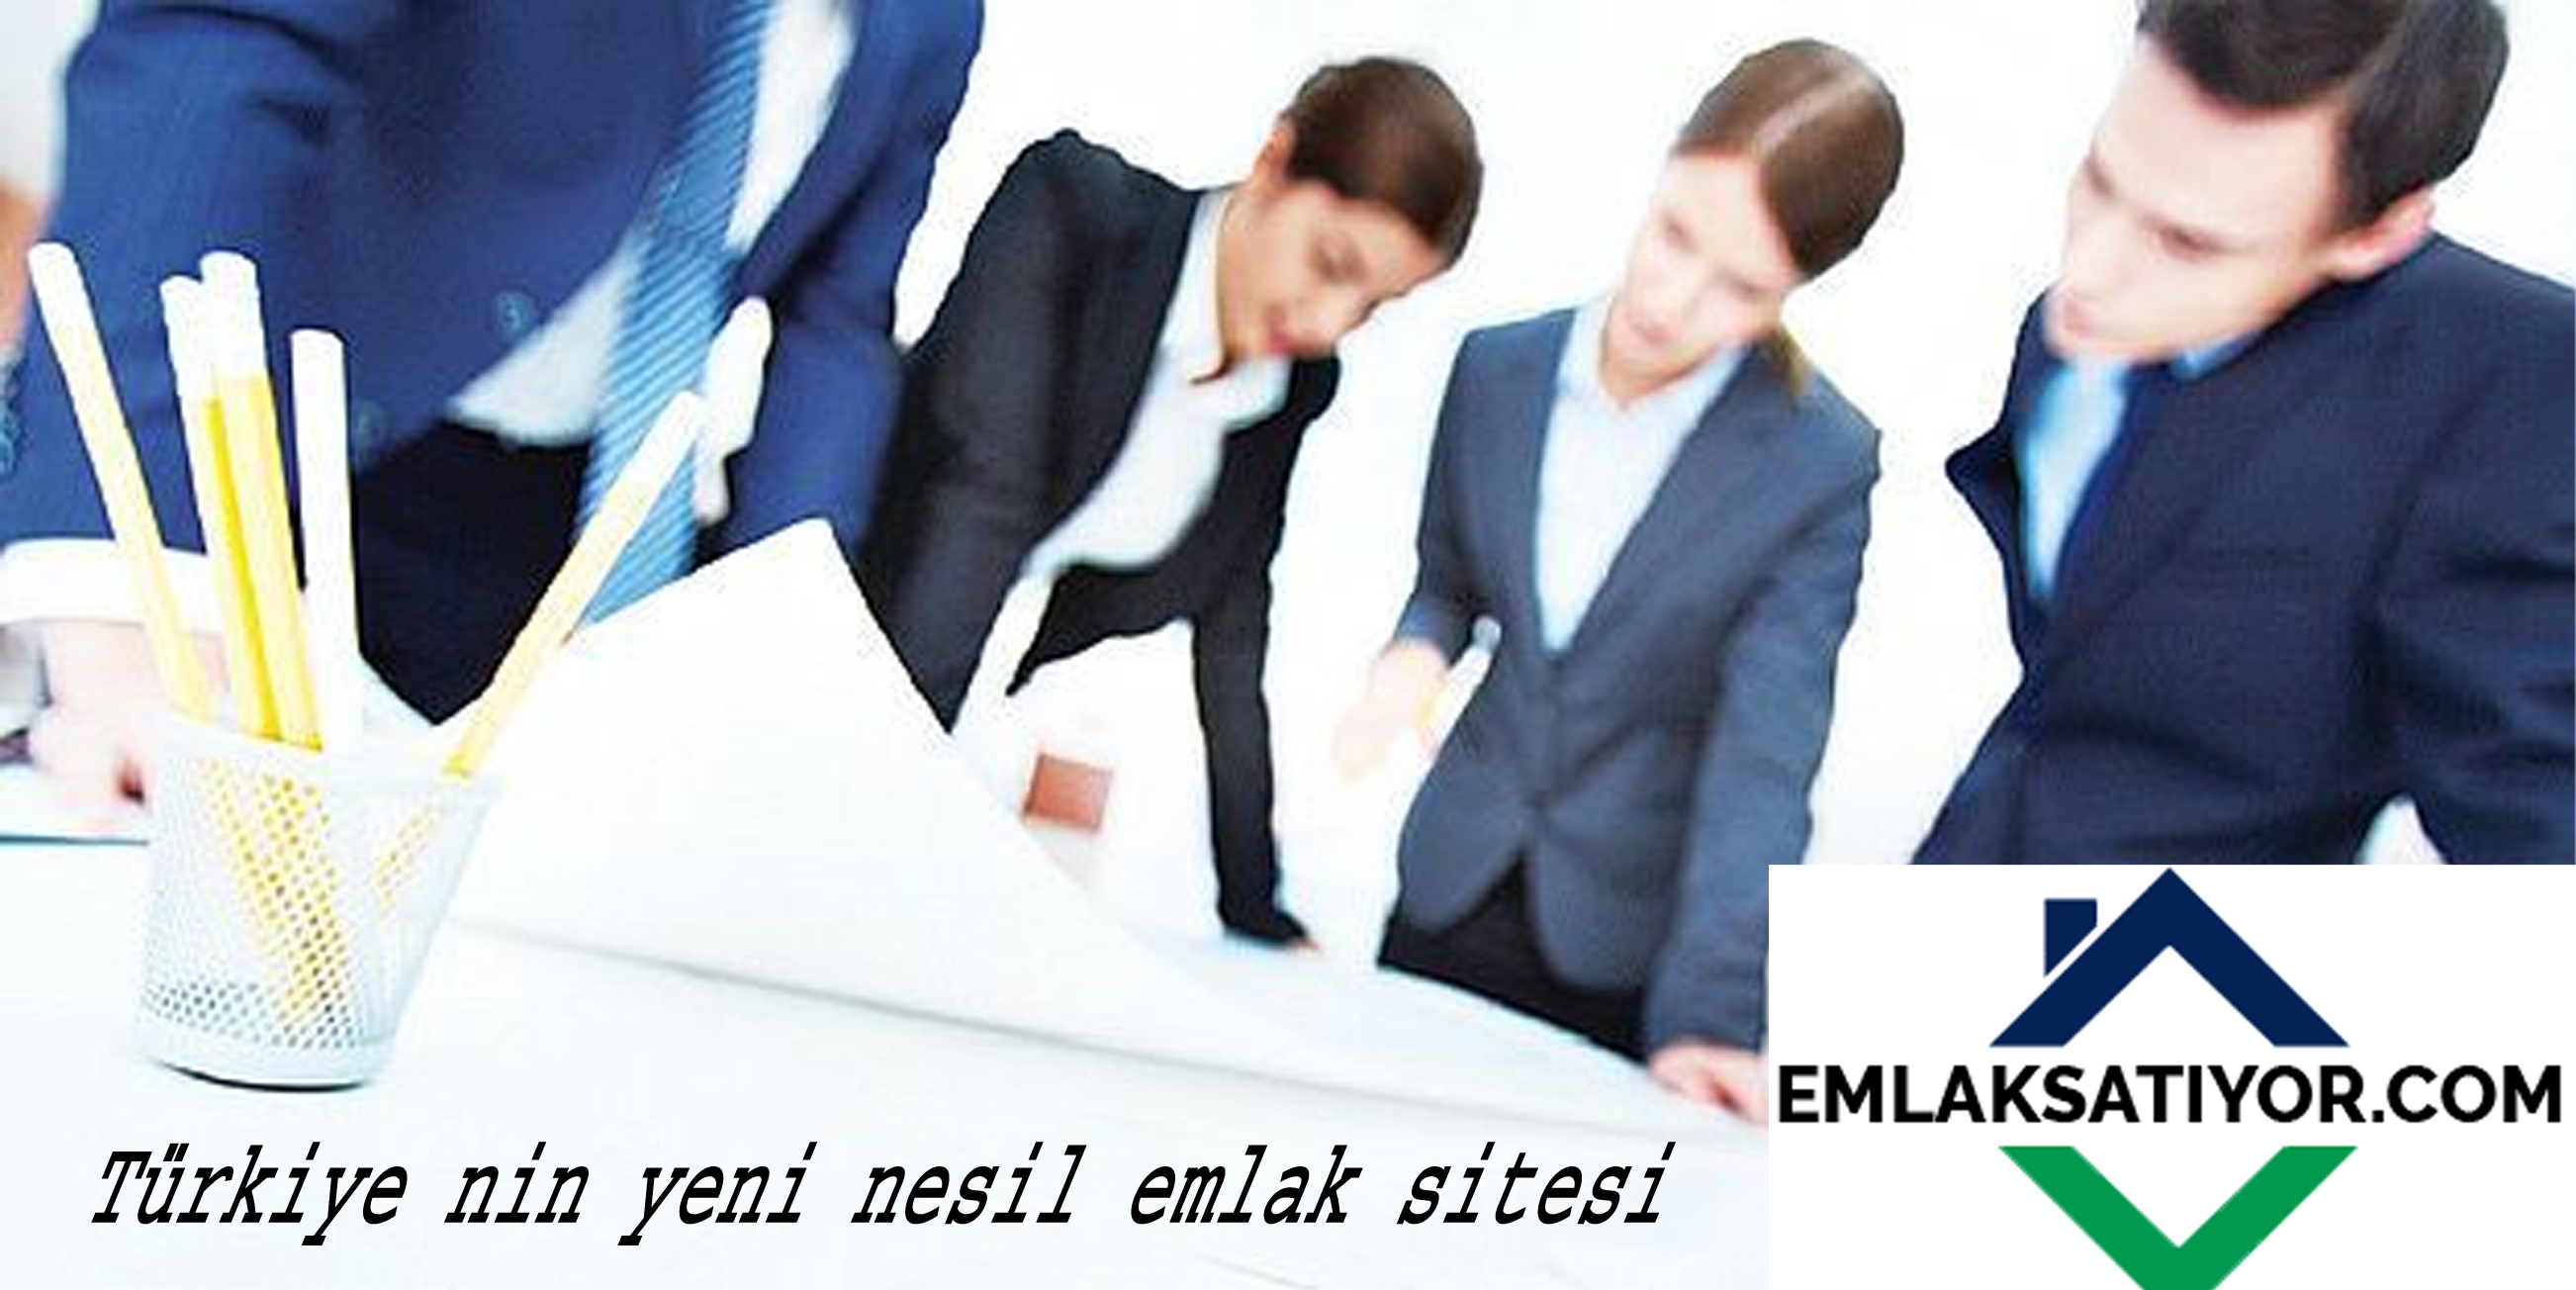 Türkiye'nin en güncel ve güvenilir emlak ilanları, sektörlere dair tüm gelişmeleri takip edebileceğiniz 